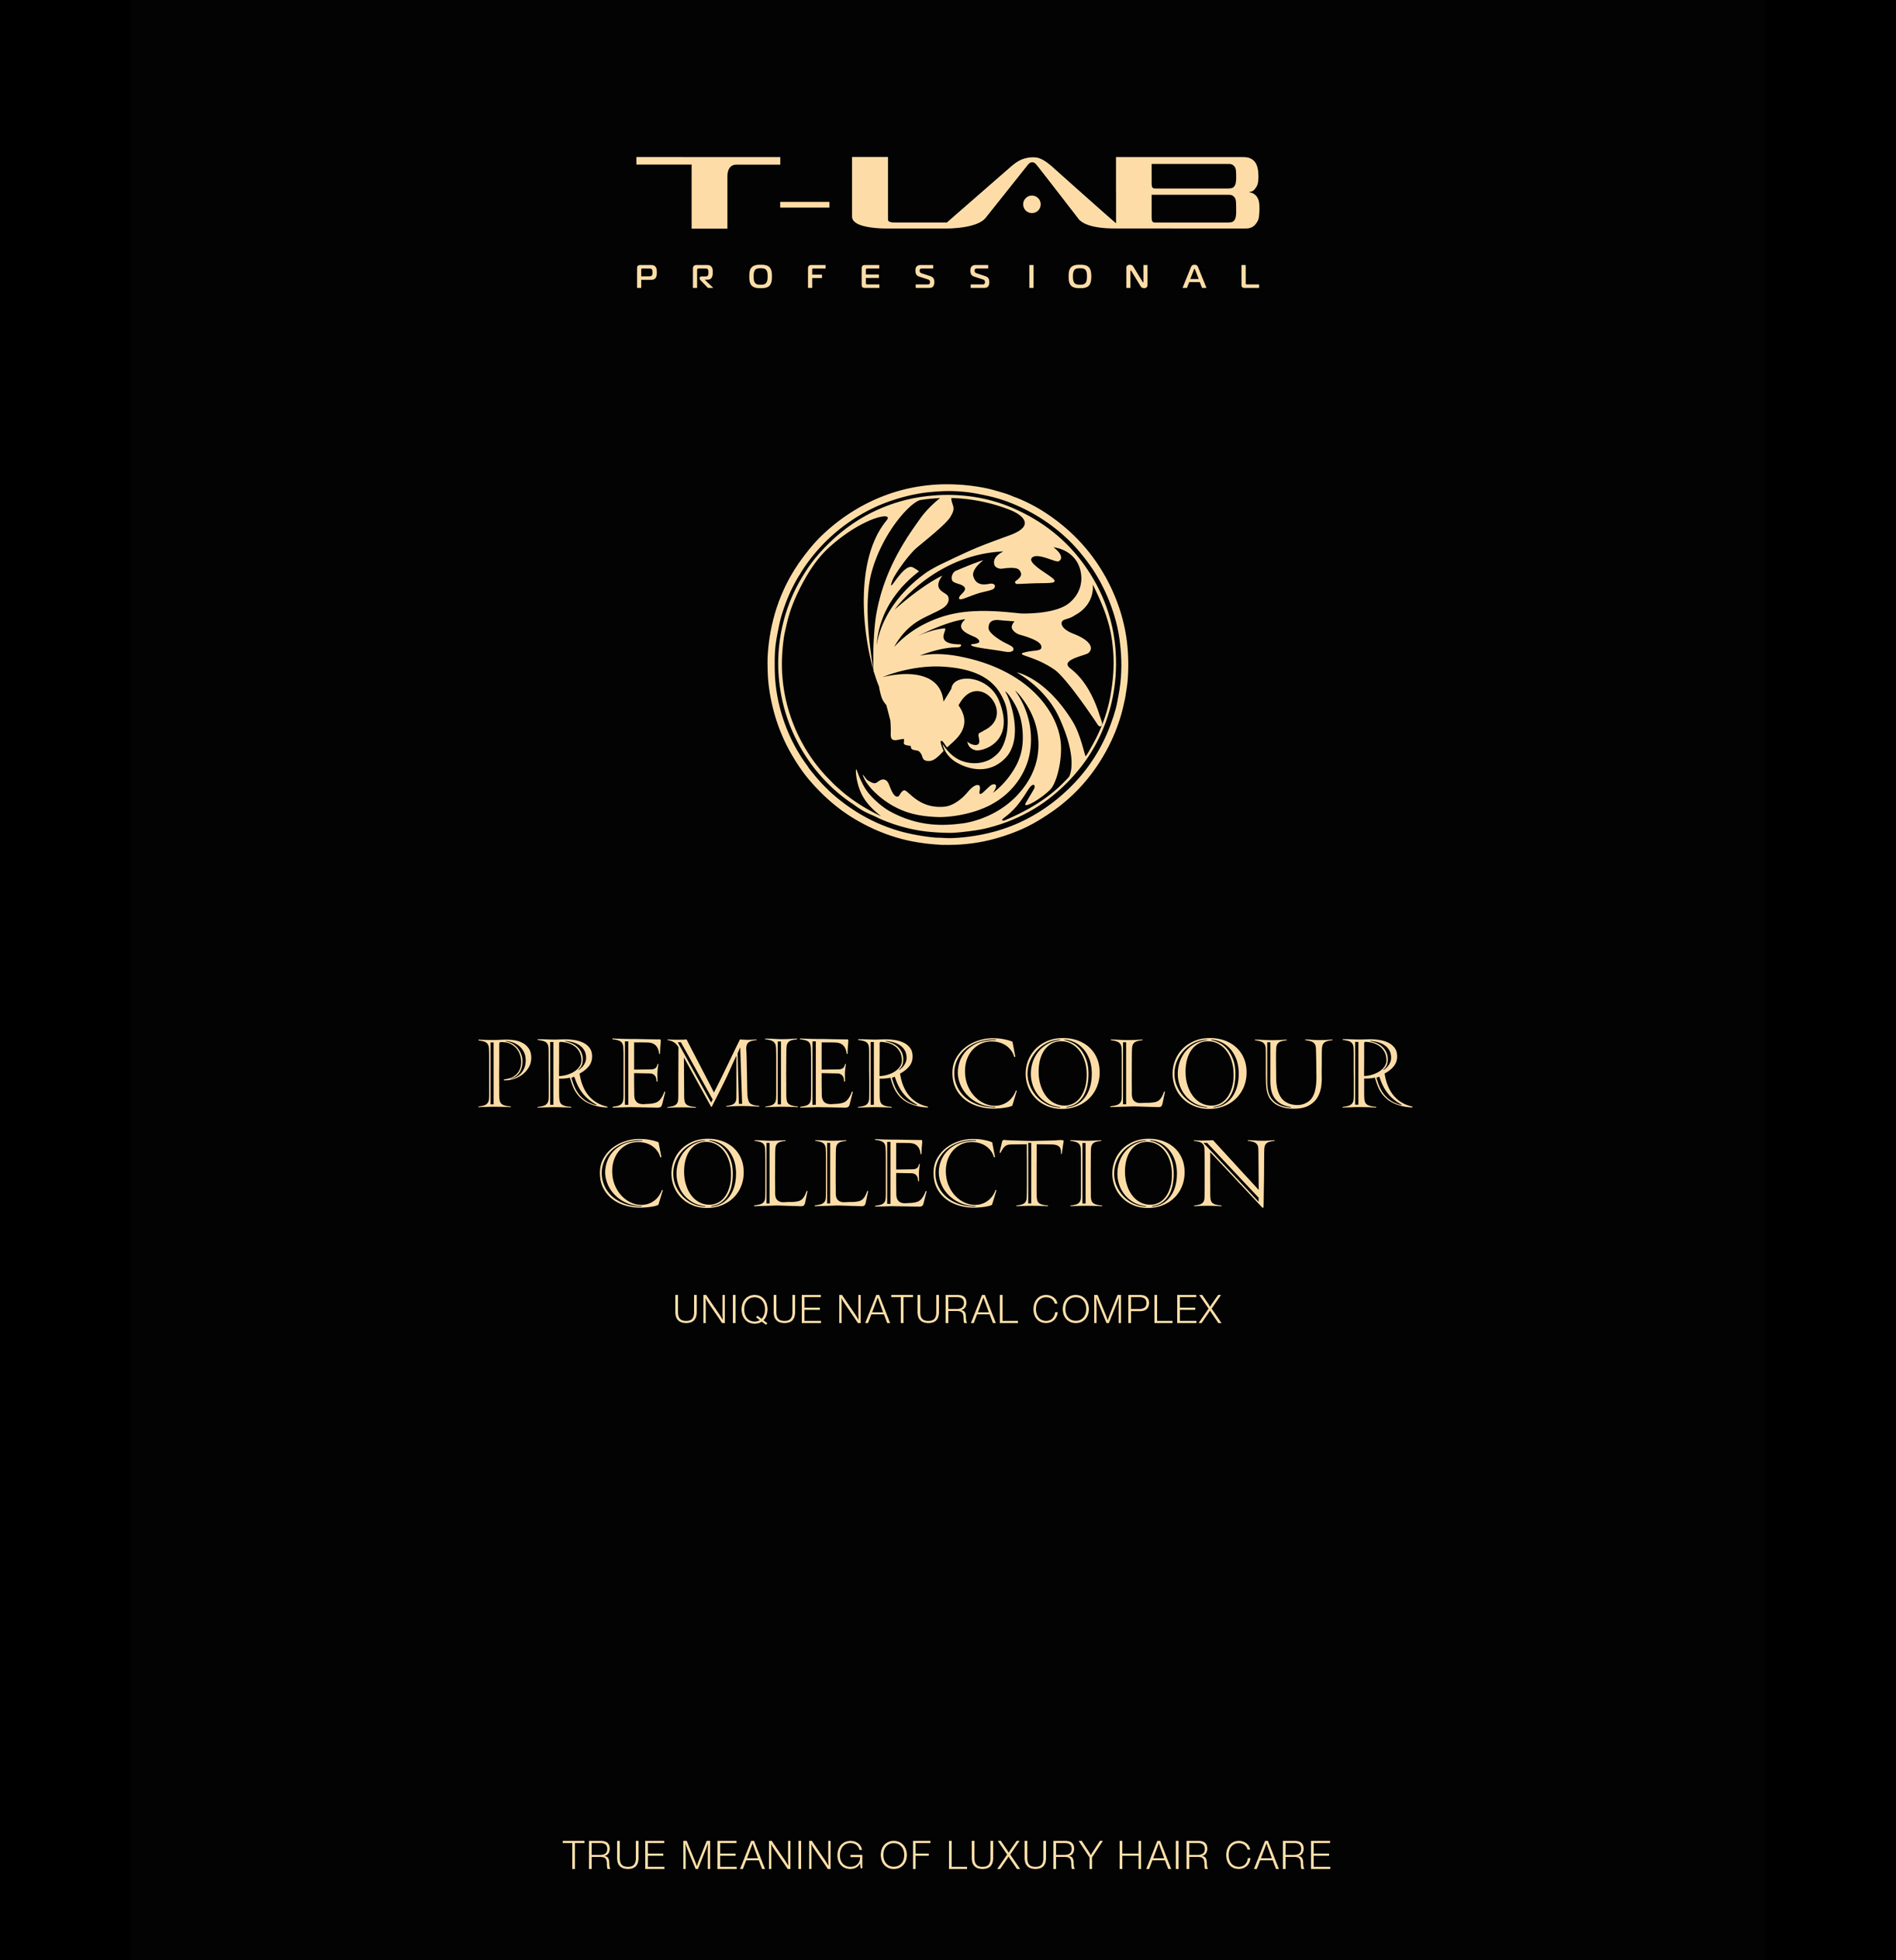 Premier Colour Collection